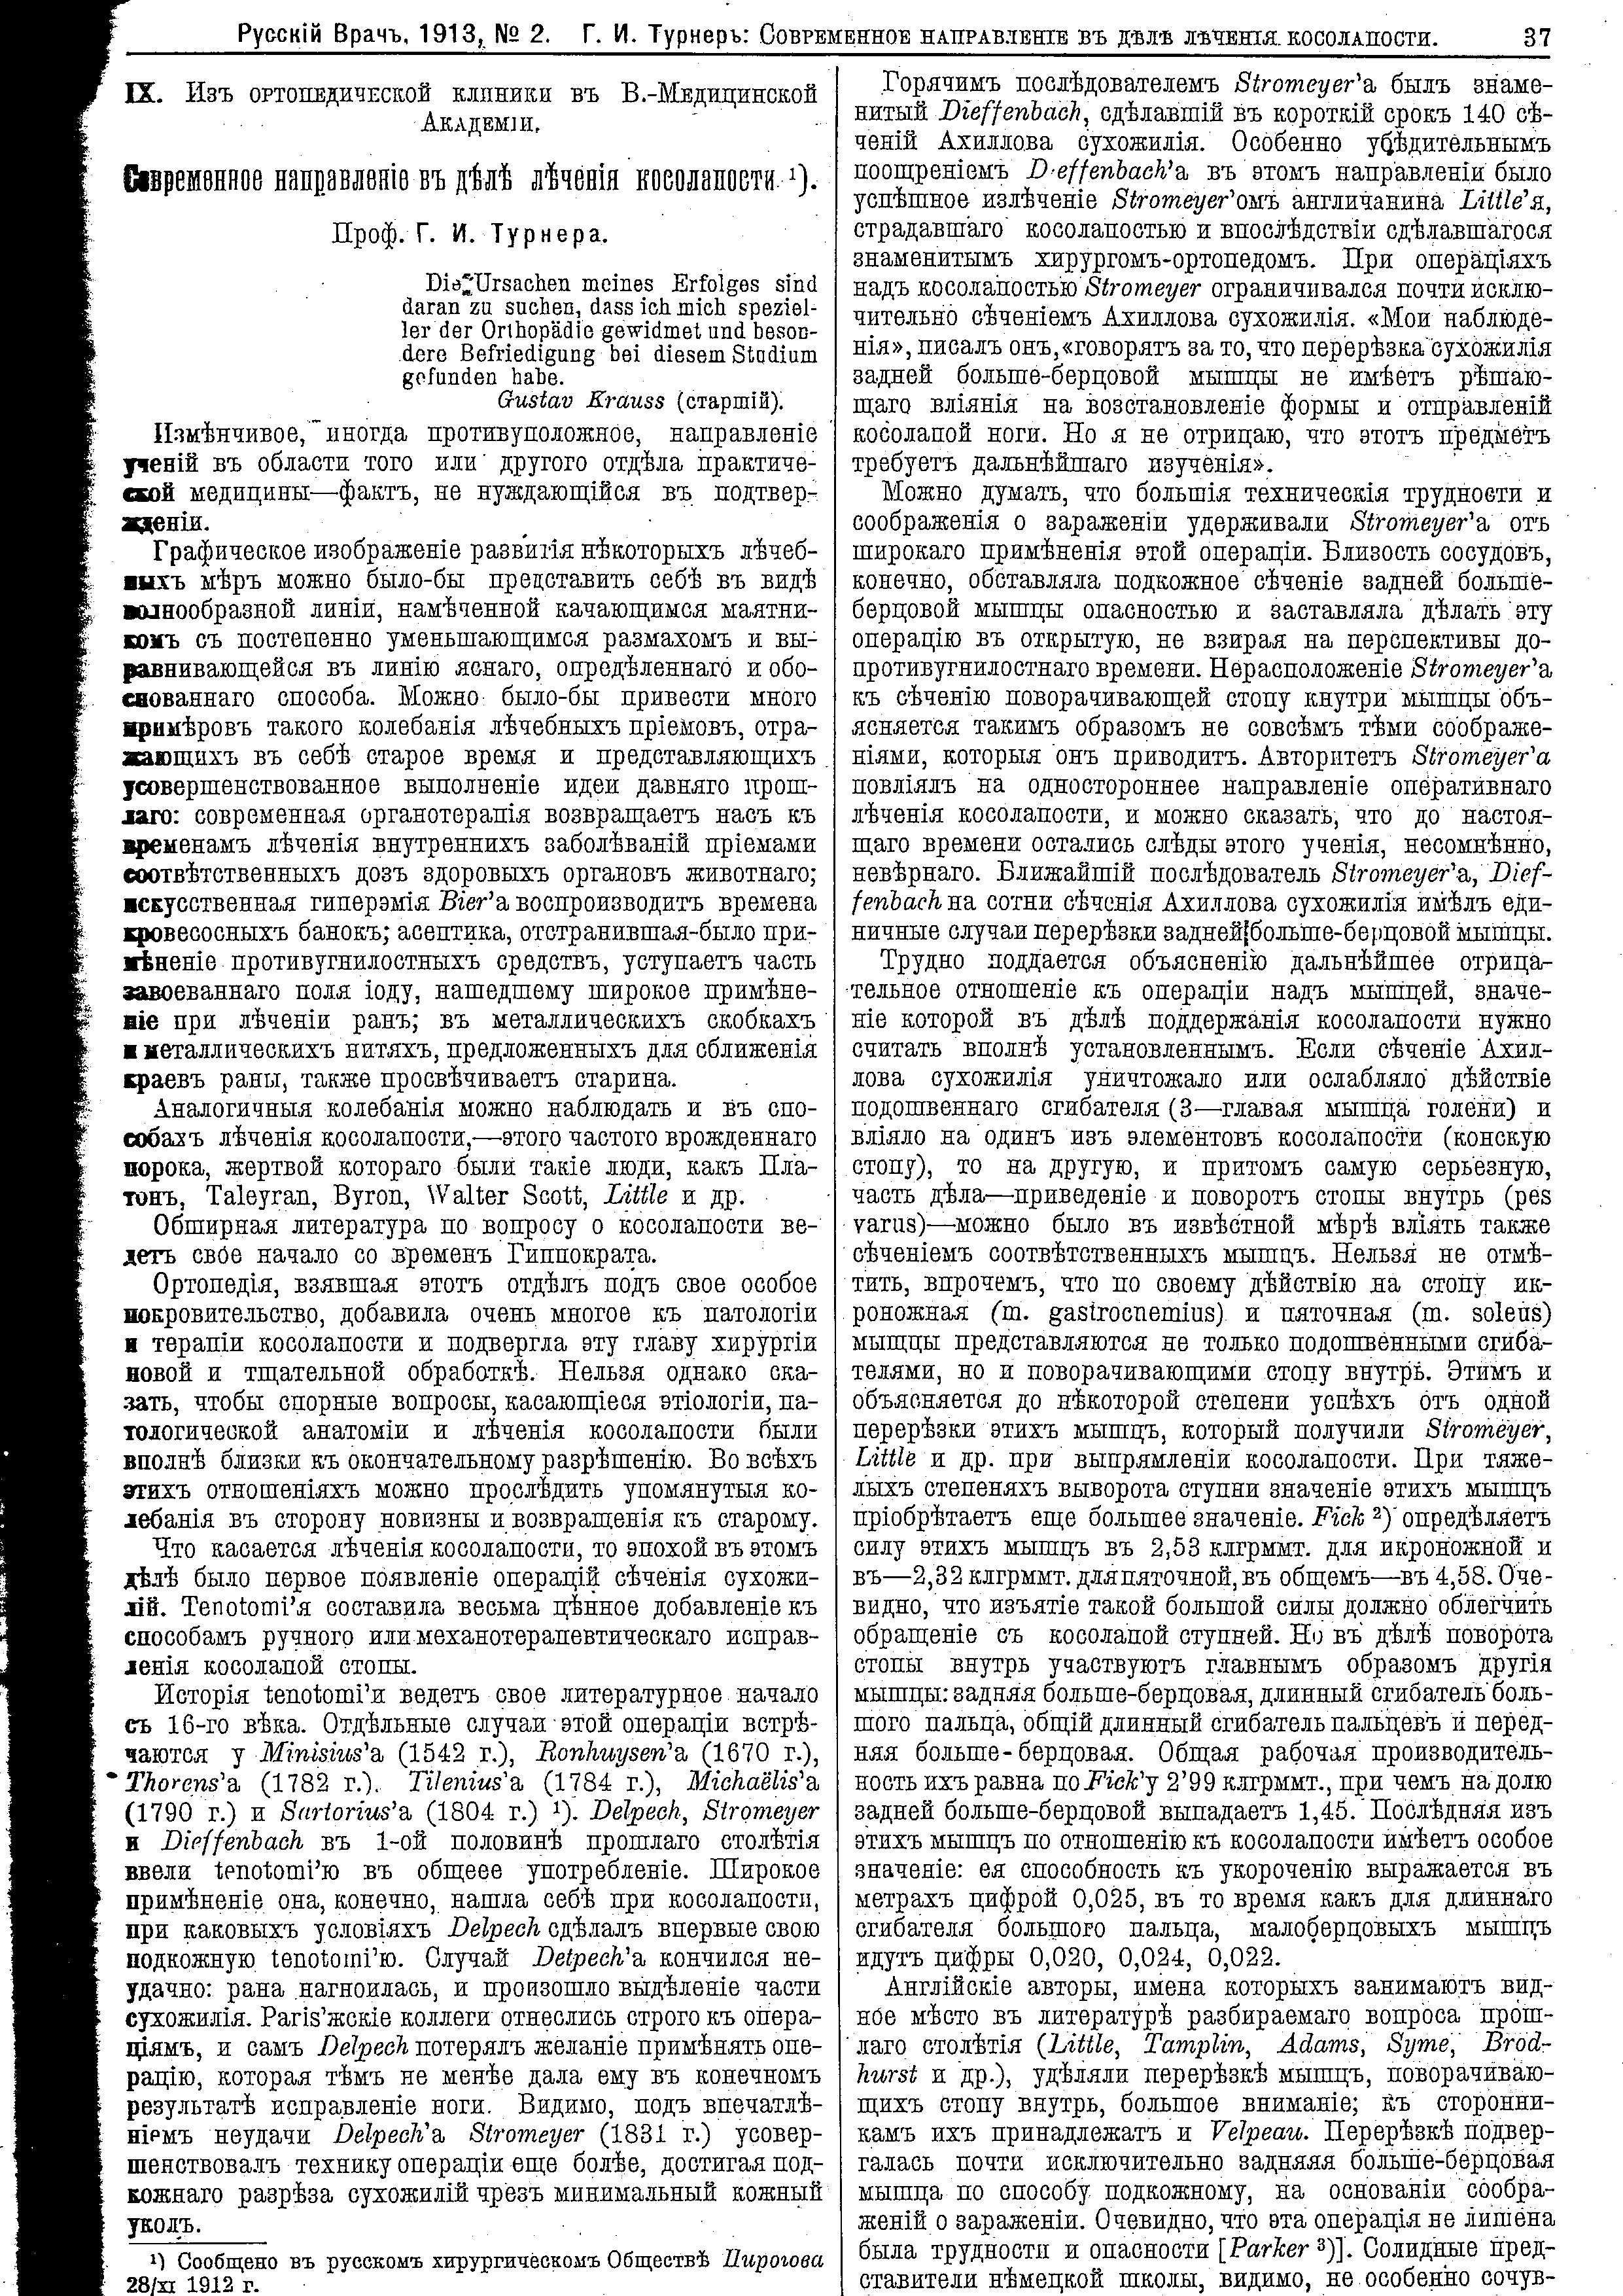 Антиквар подшивка Русский врач 1913 года.